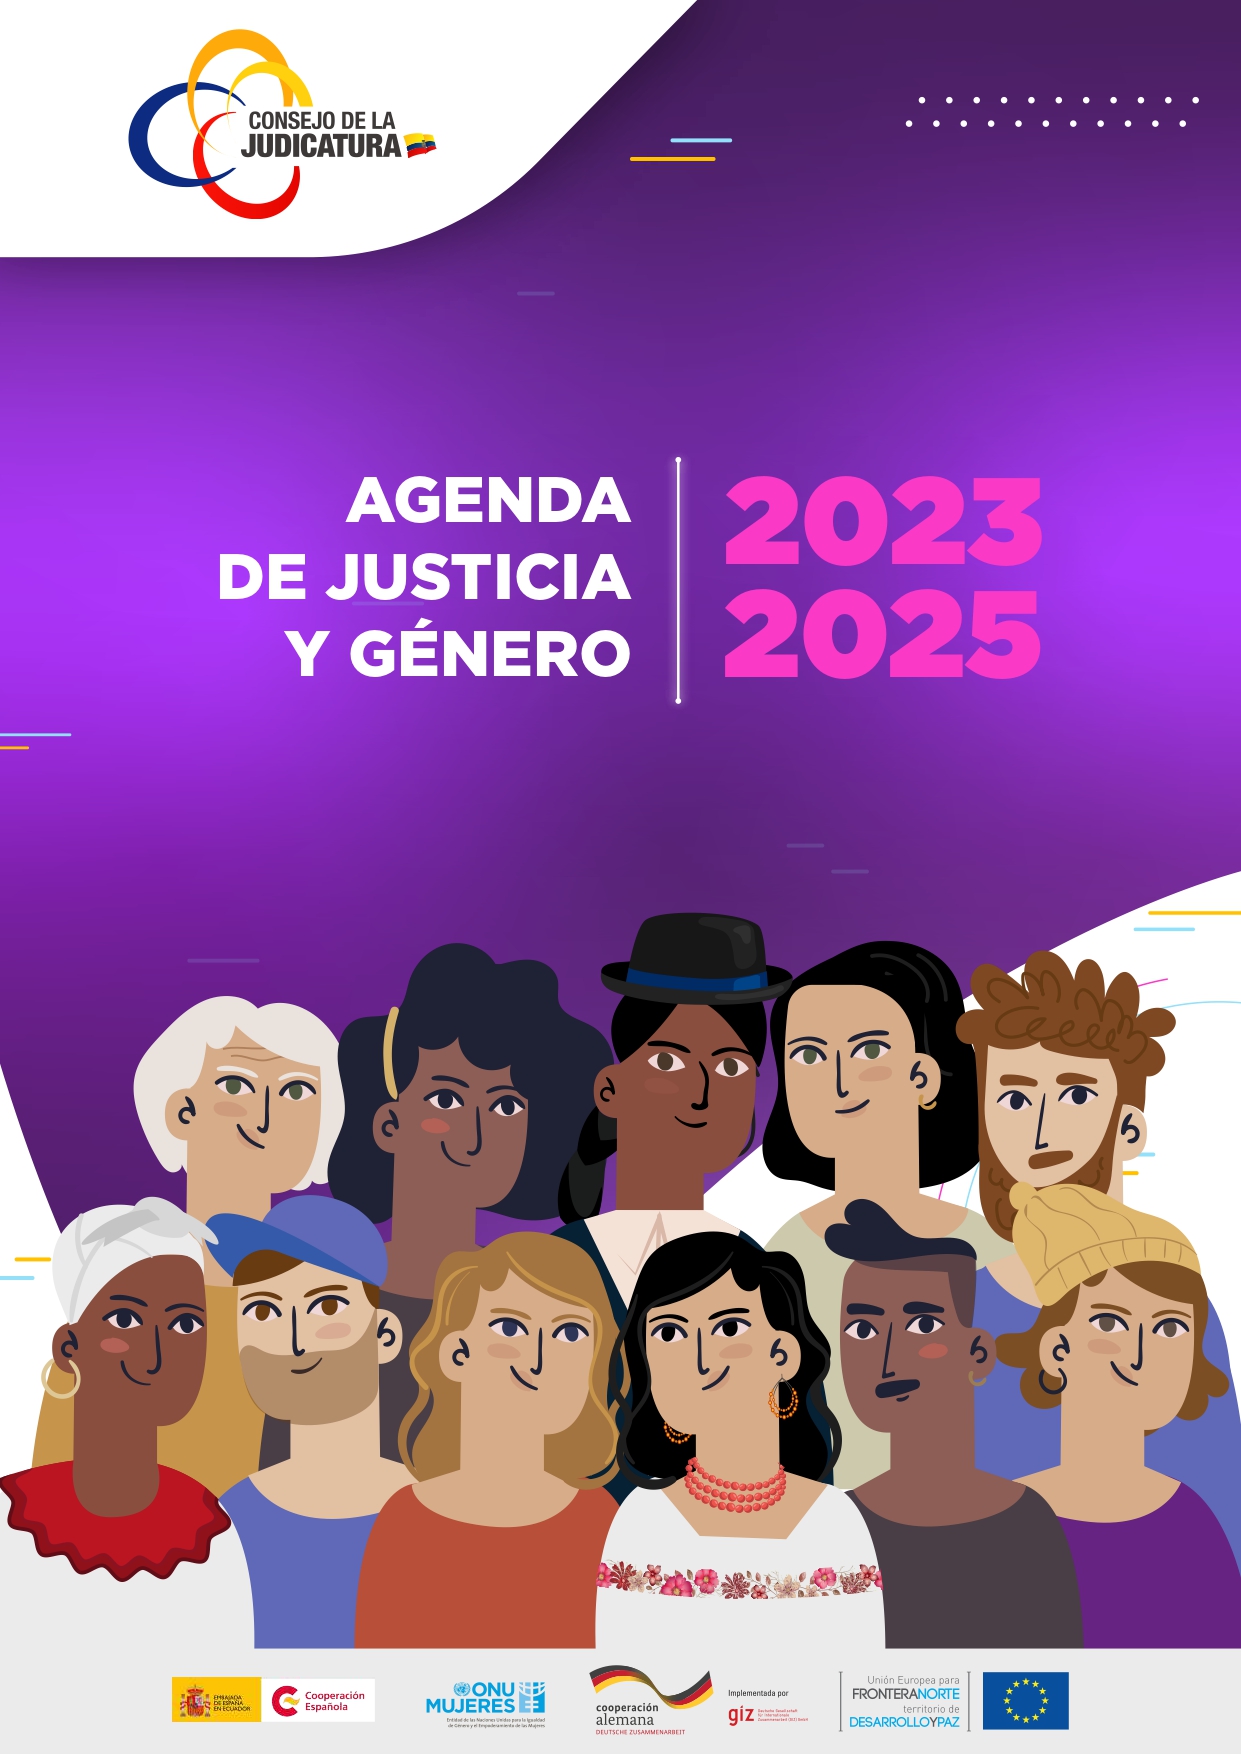 AGENDA JUSTICIA Y GENERO 2022-2025